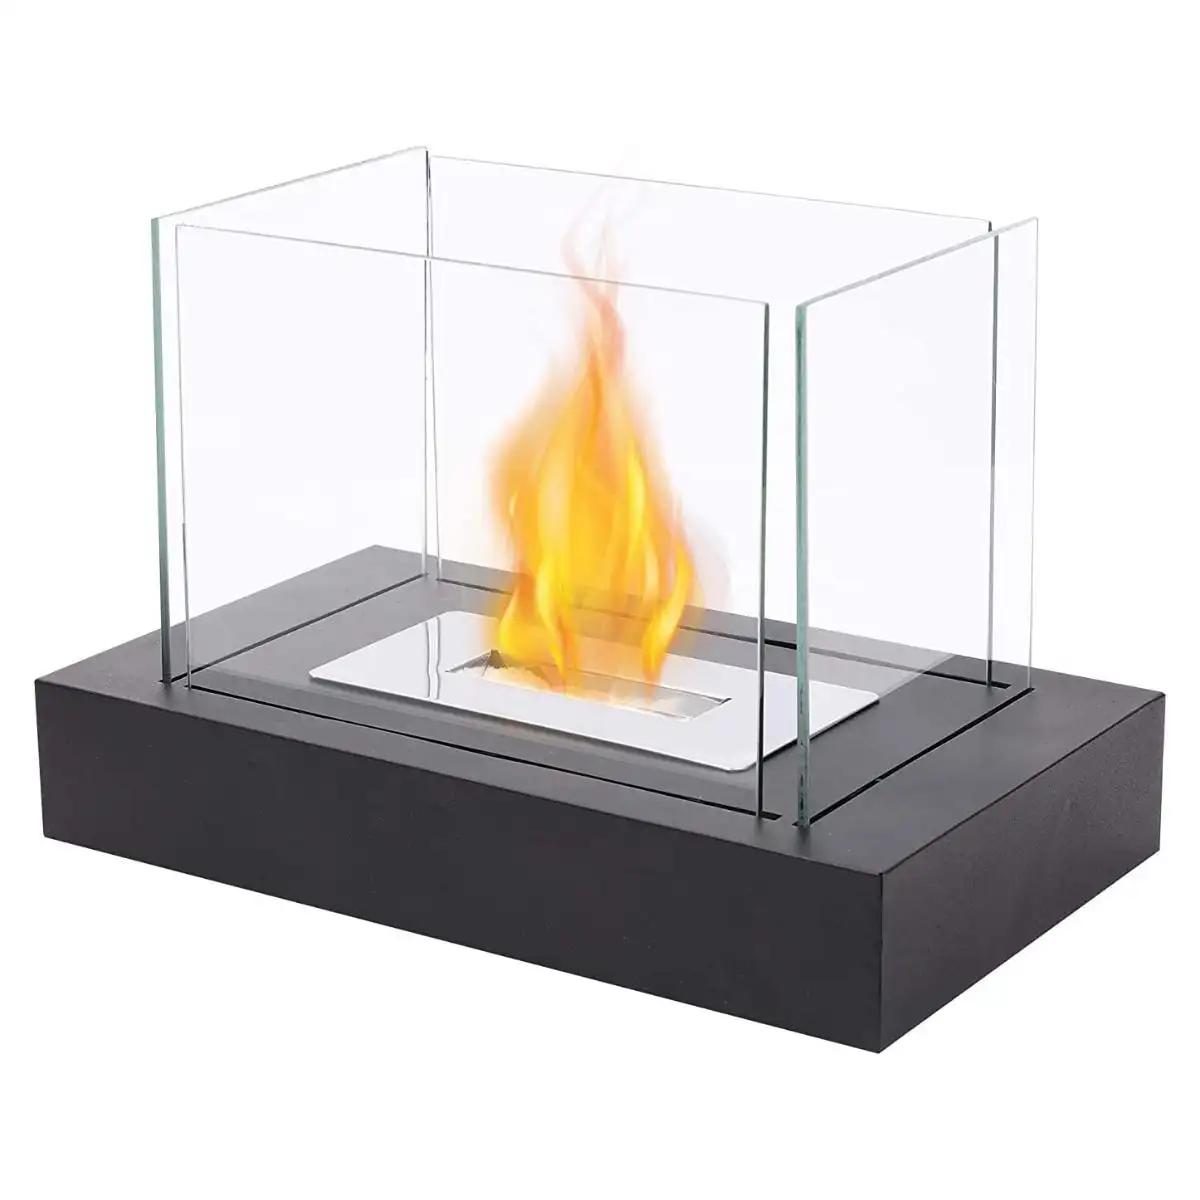 SUNBOW dikdörtgen kapalı masa üstü biyoetanol şömine taşınabilir masa üstü biyo etanol şömine Tischkamin kürk ateş çukuru cam